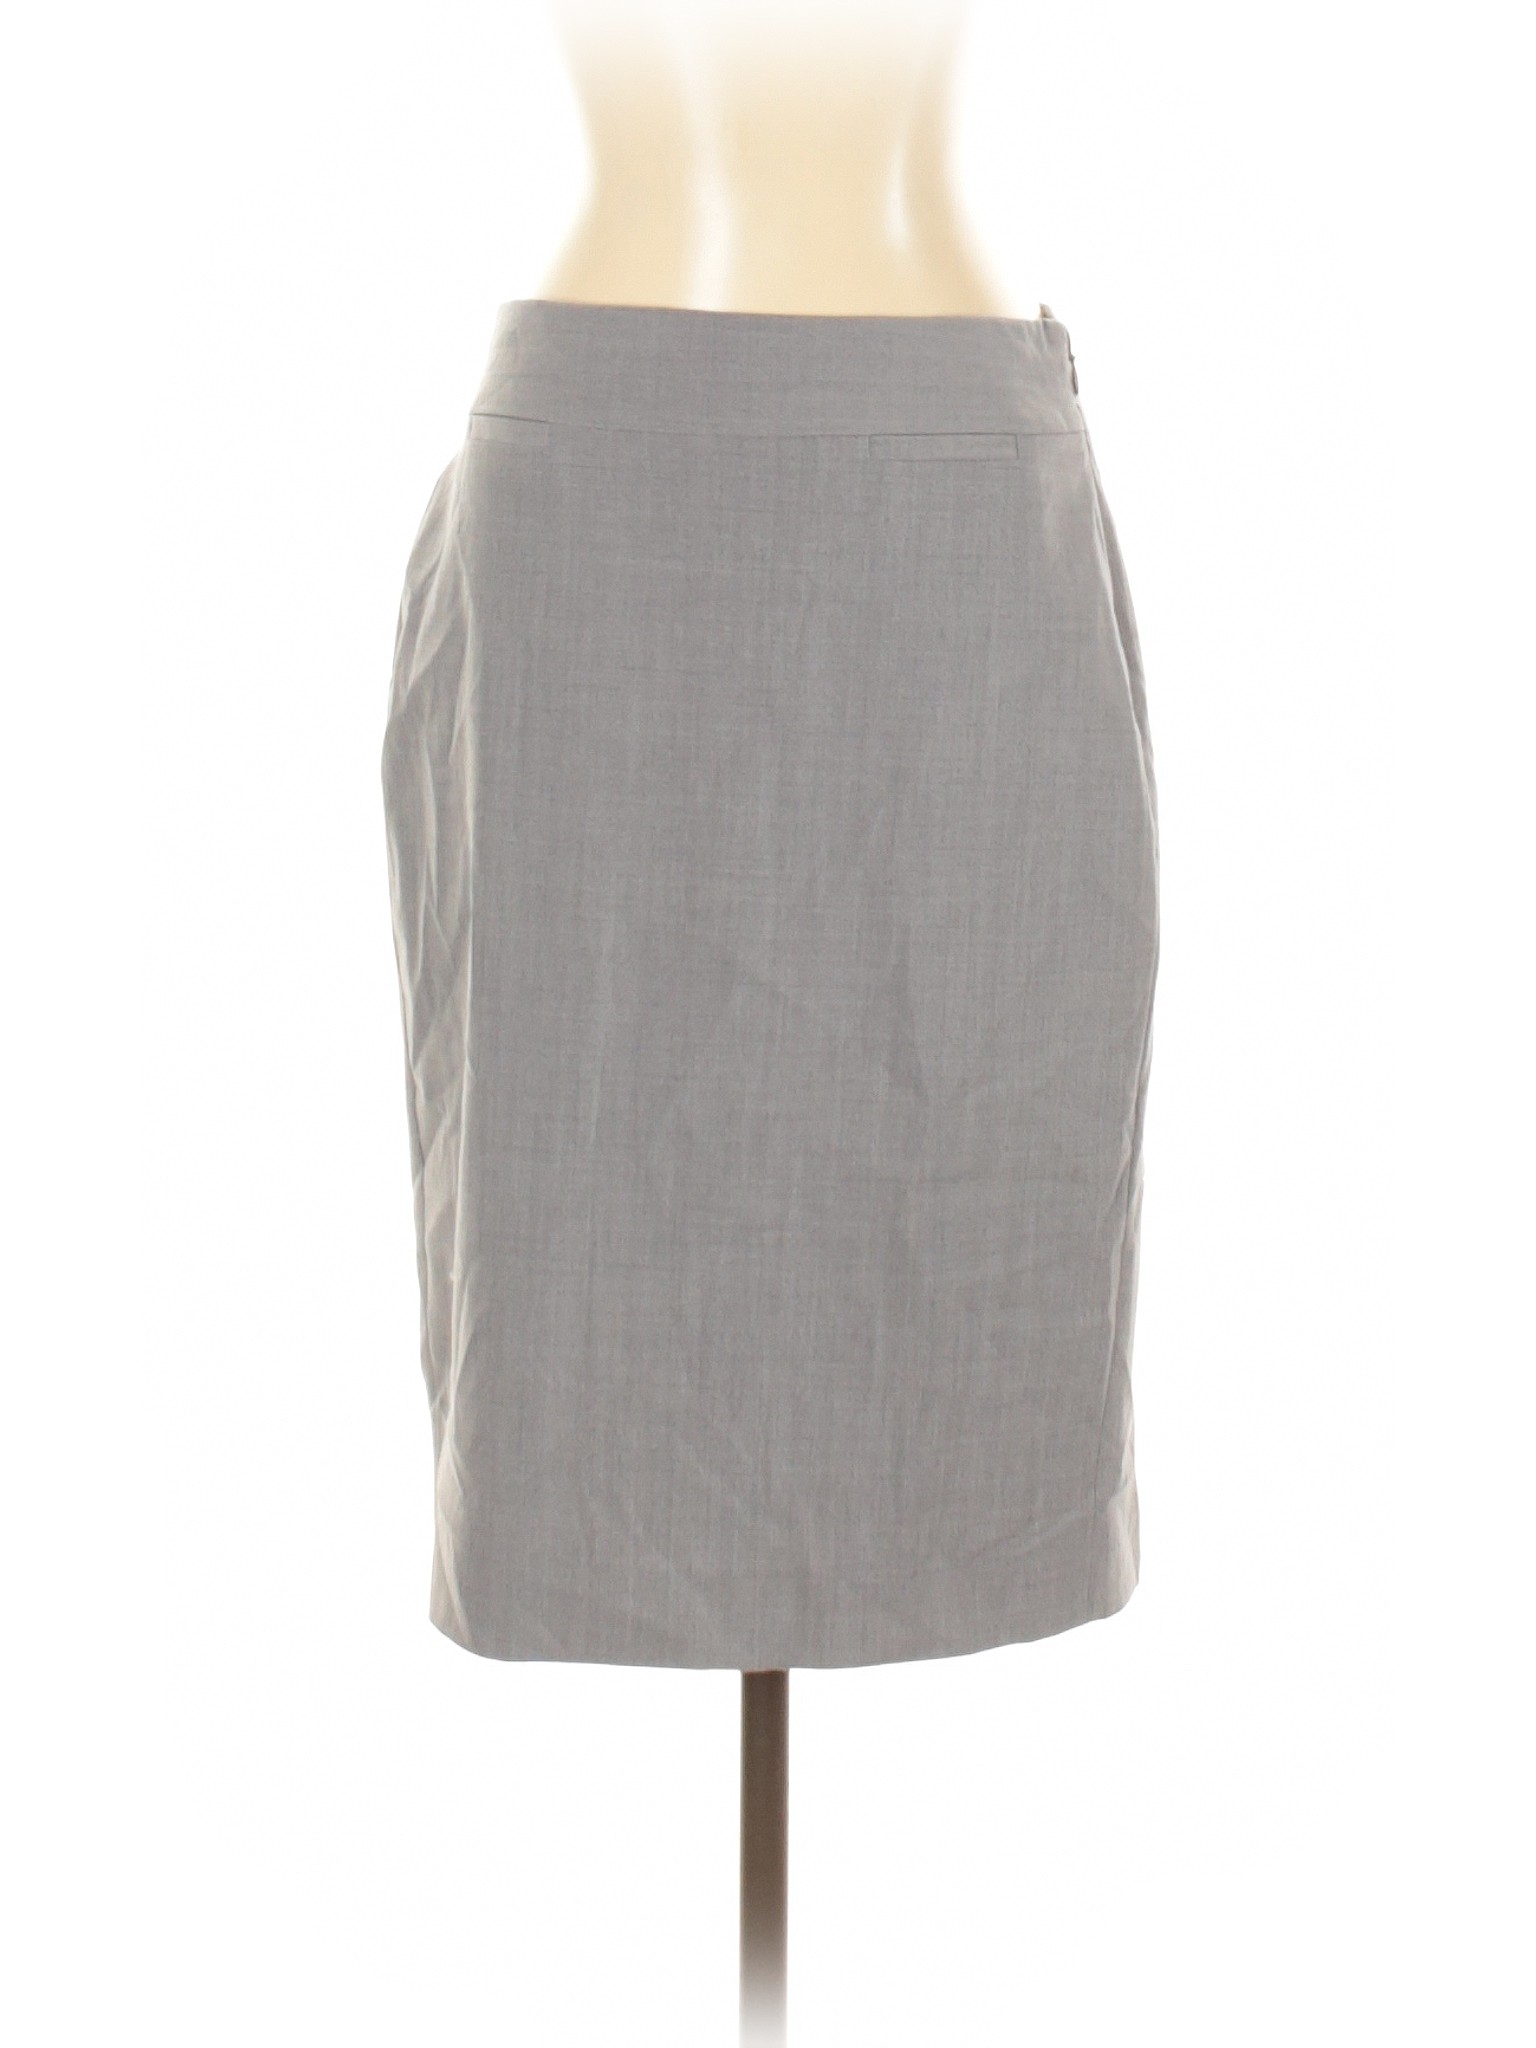 Banana Republic Women Gray Wool Skirt 2 | eBay